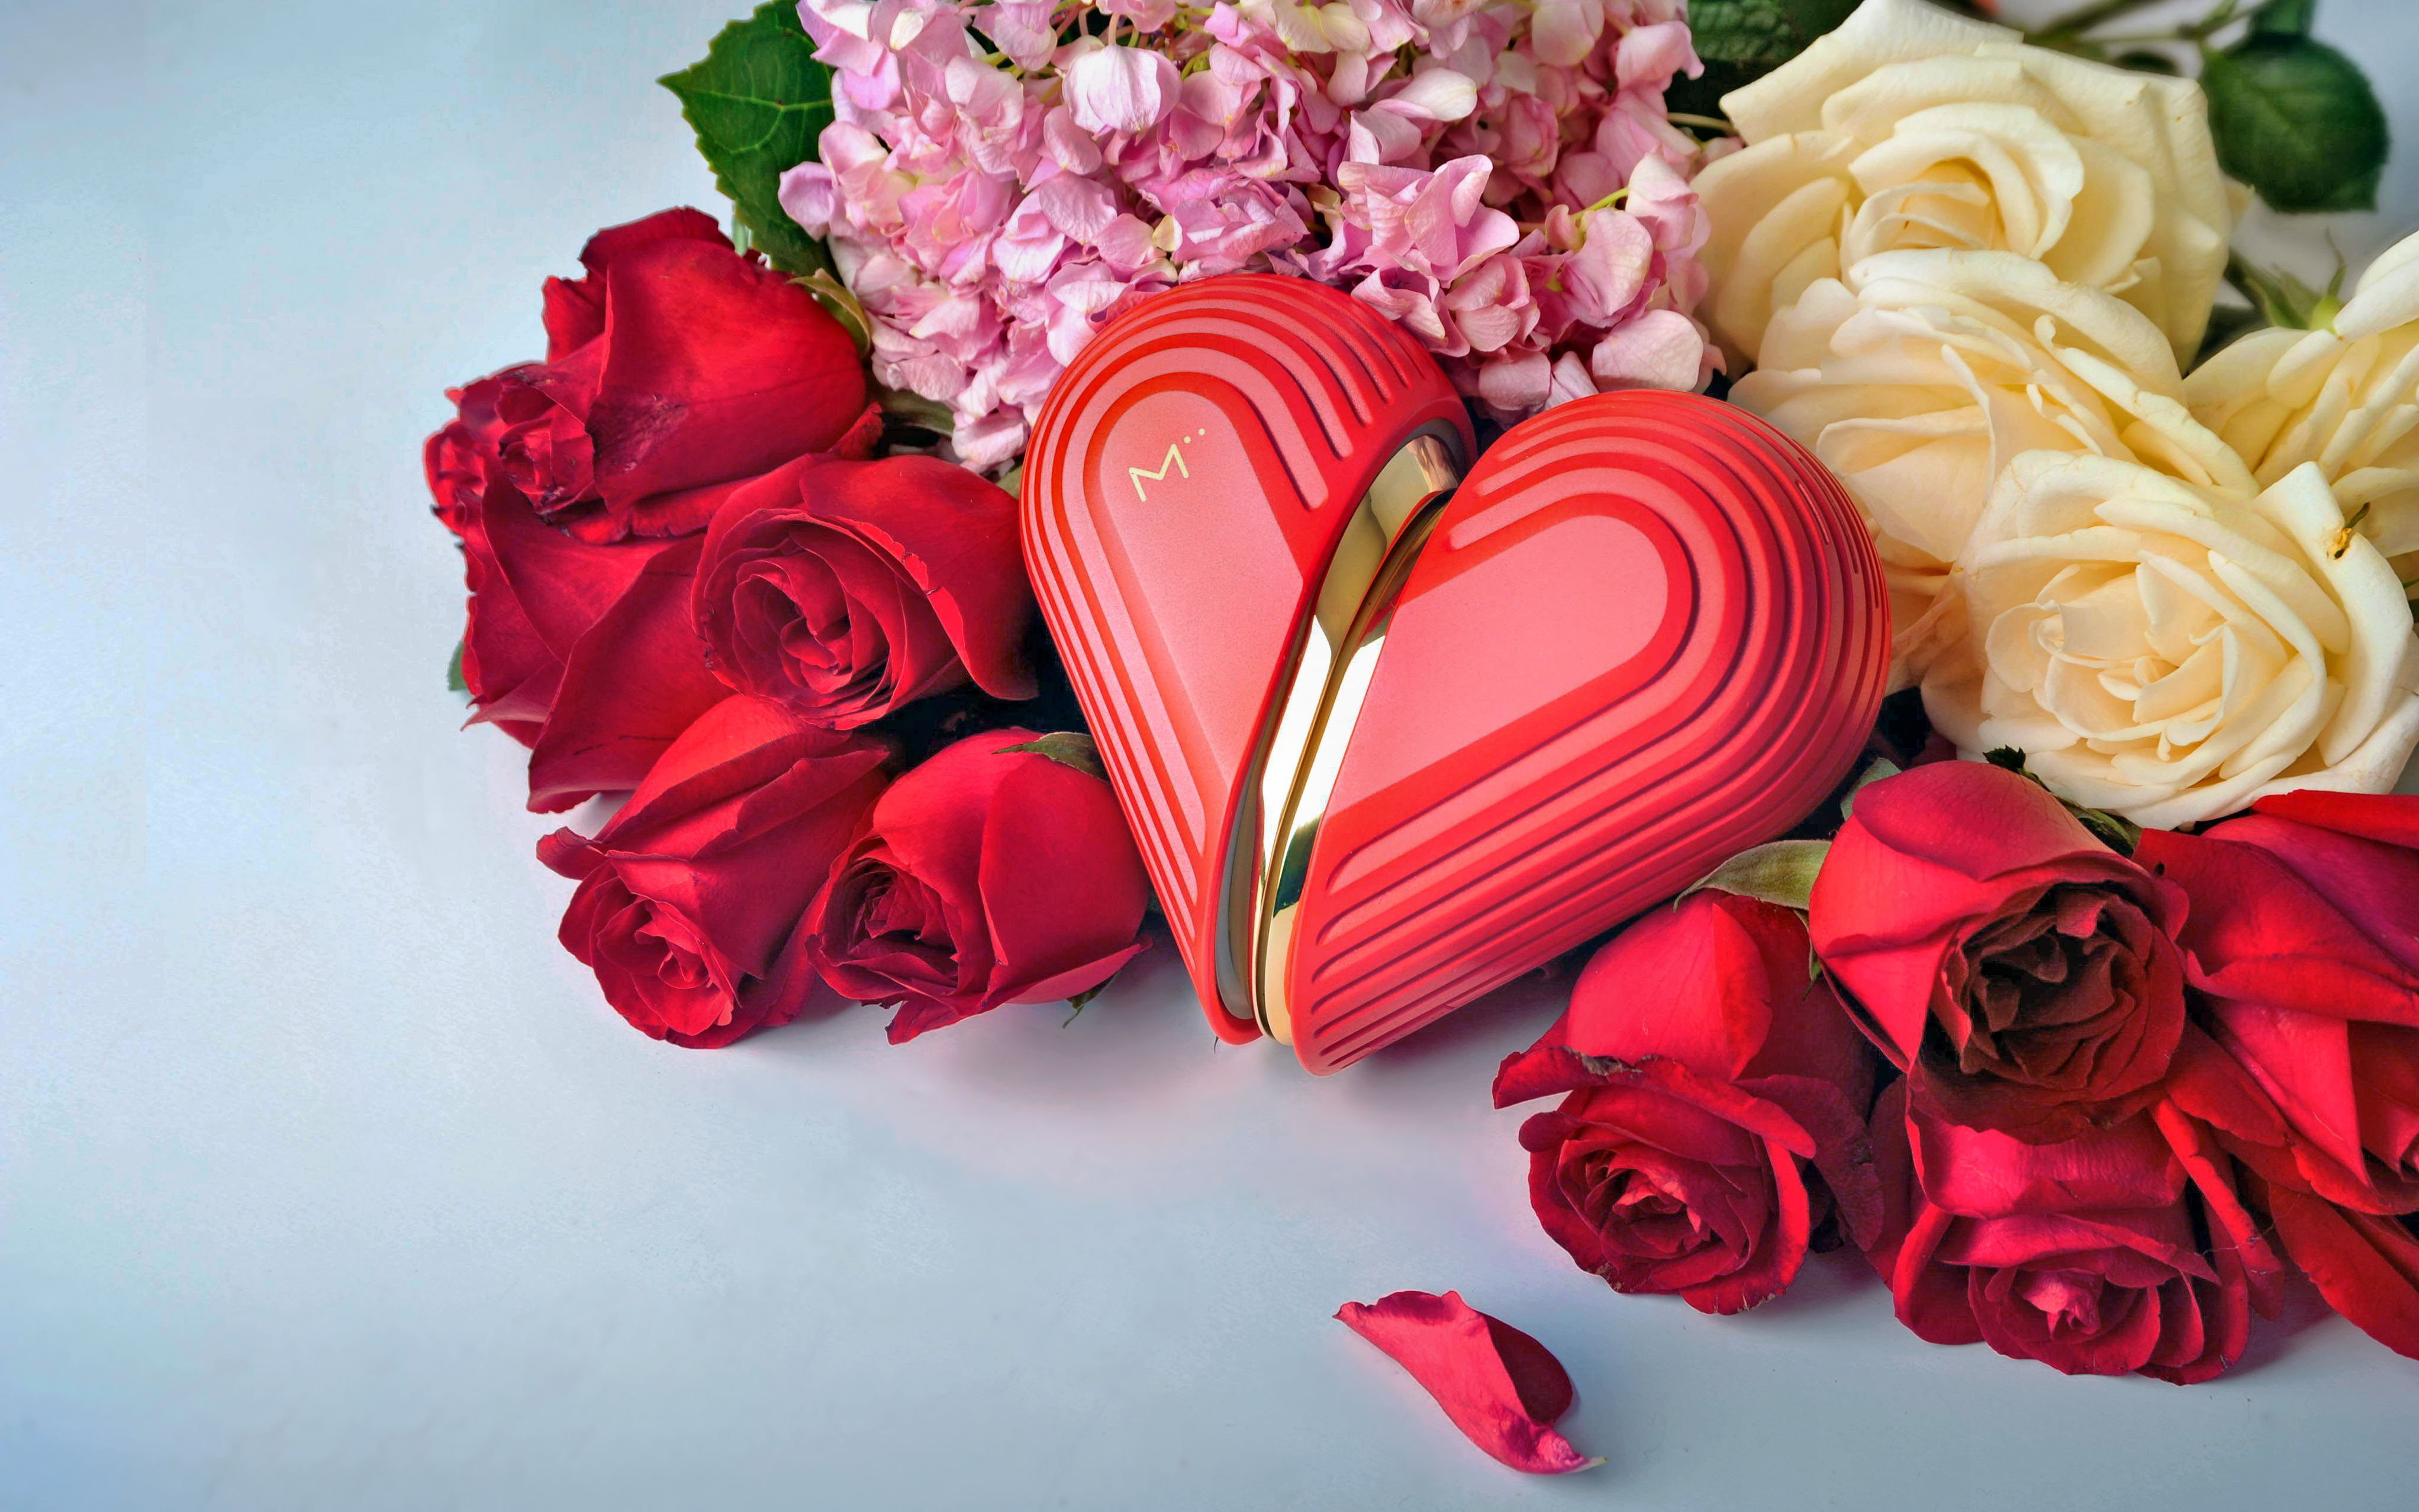 Скачать обои бесплатно Цветок, Роза, Букет, Красочный, День Святого Валентина, Праздничные картинка на рабочий стол ПК